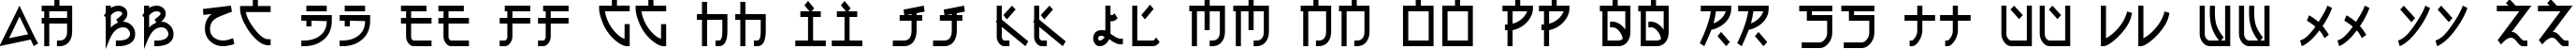 Пример написания английского алфавита шрифтом Electroharmonix